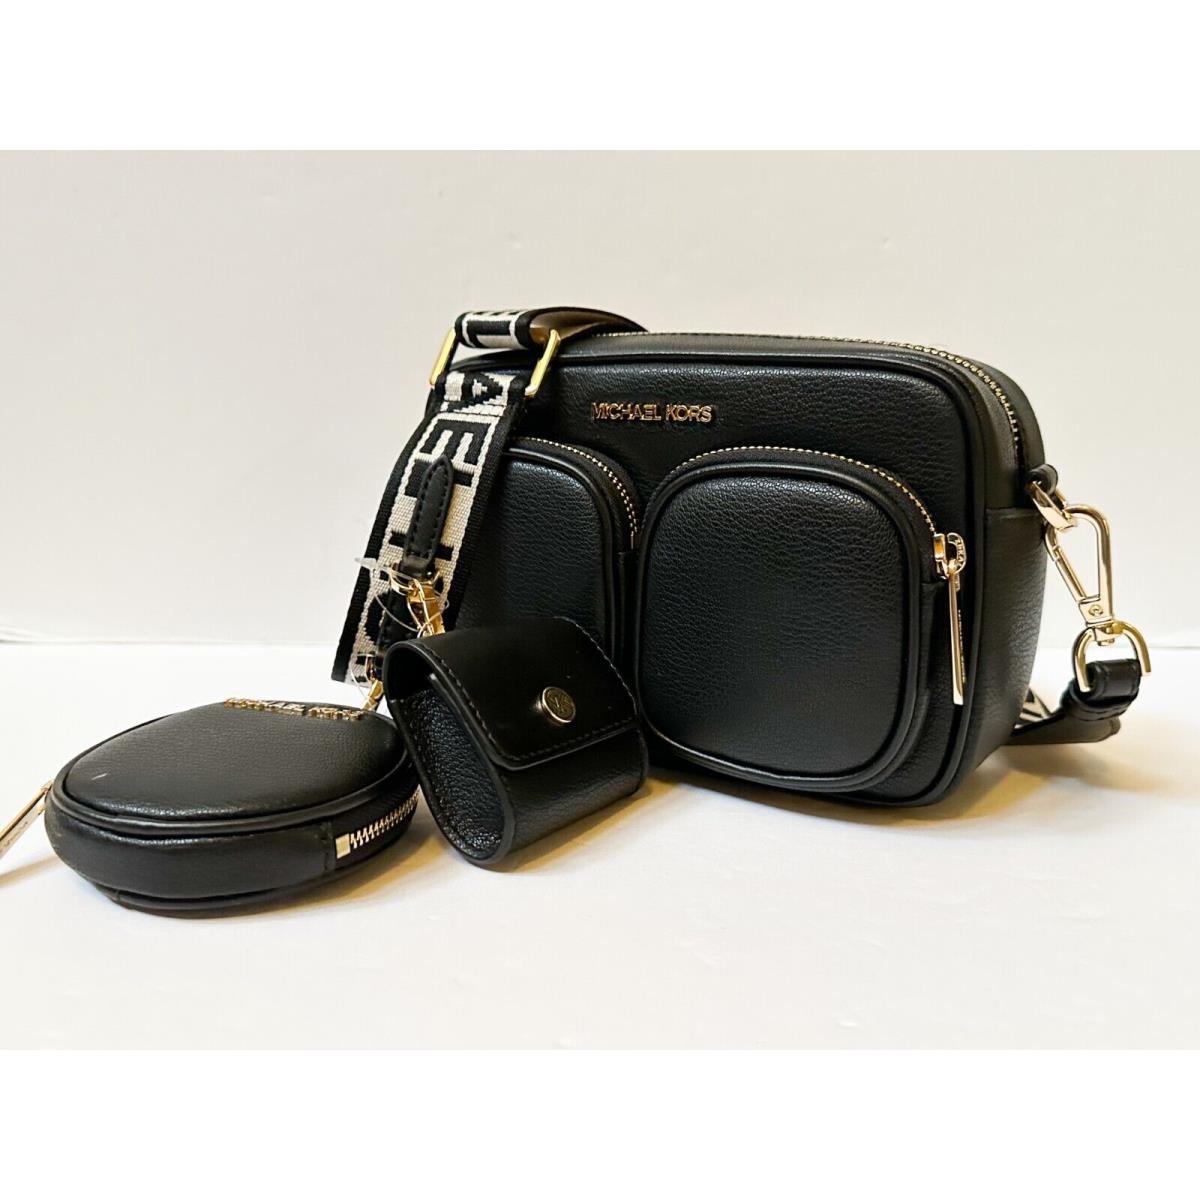 Michael Kors  bag   - Beige Black Handle/Strap, Gold Hardware, Black Exterior 3